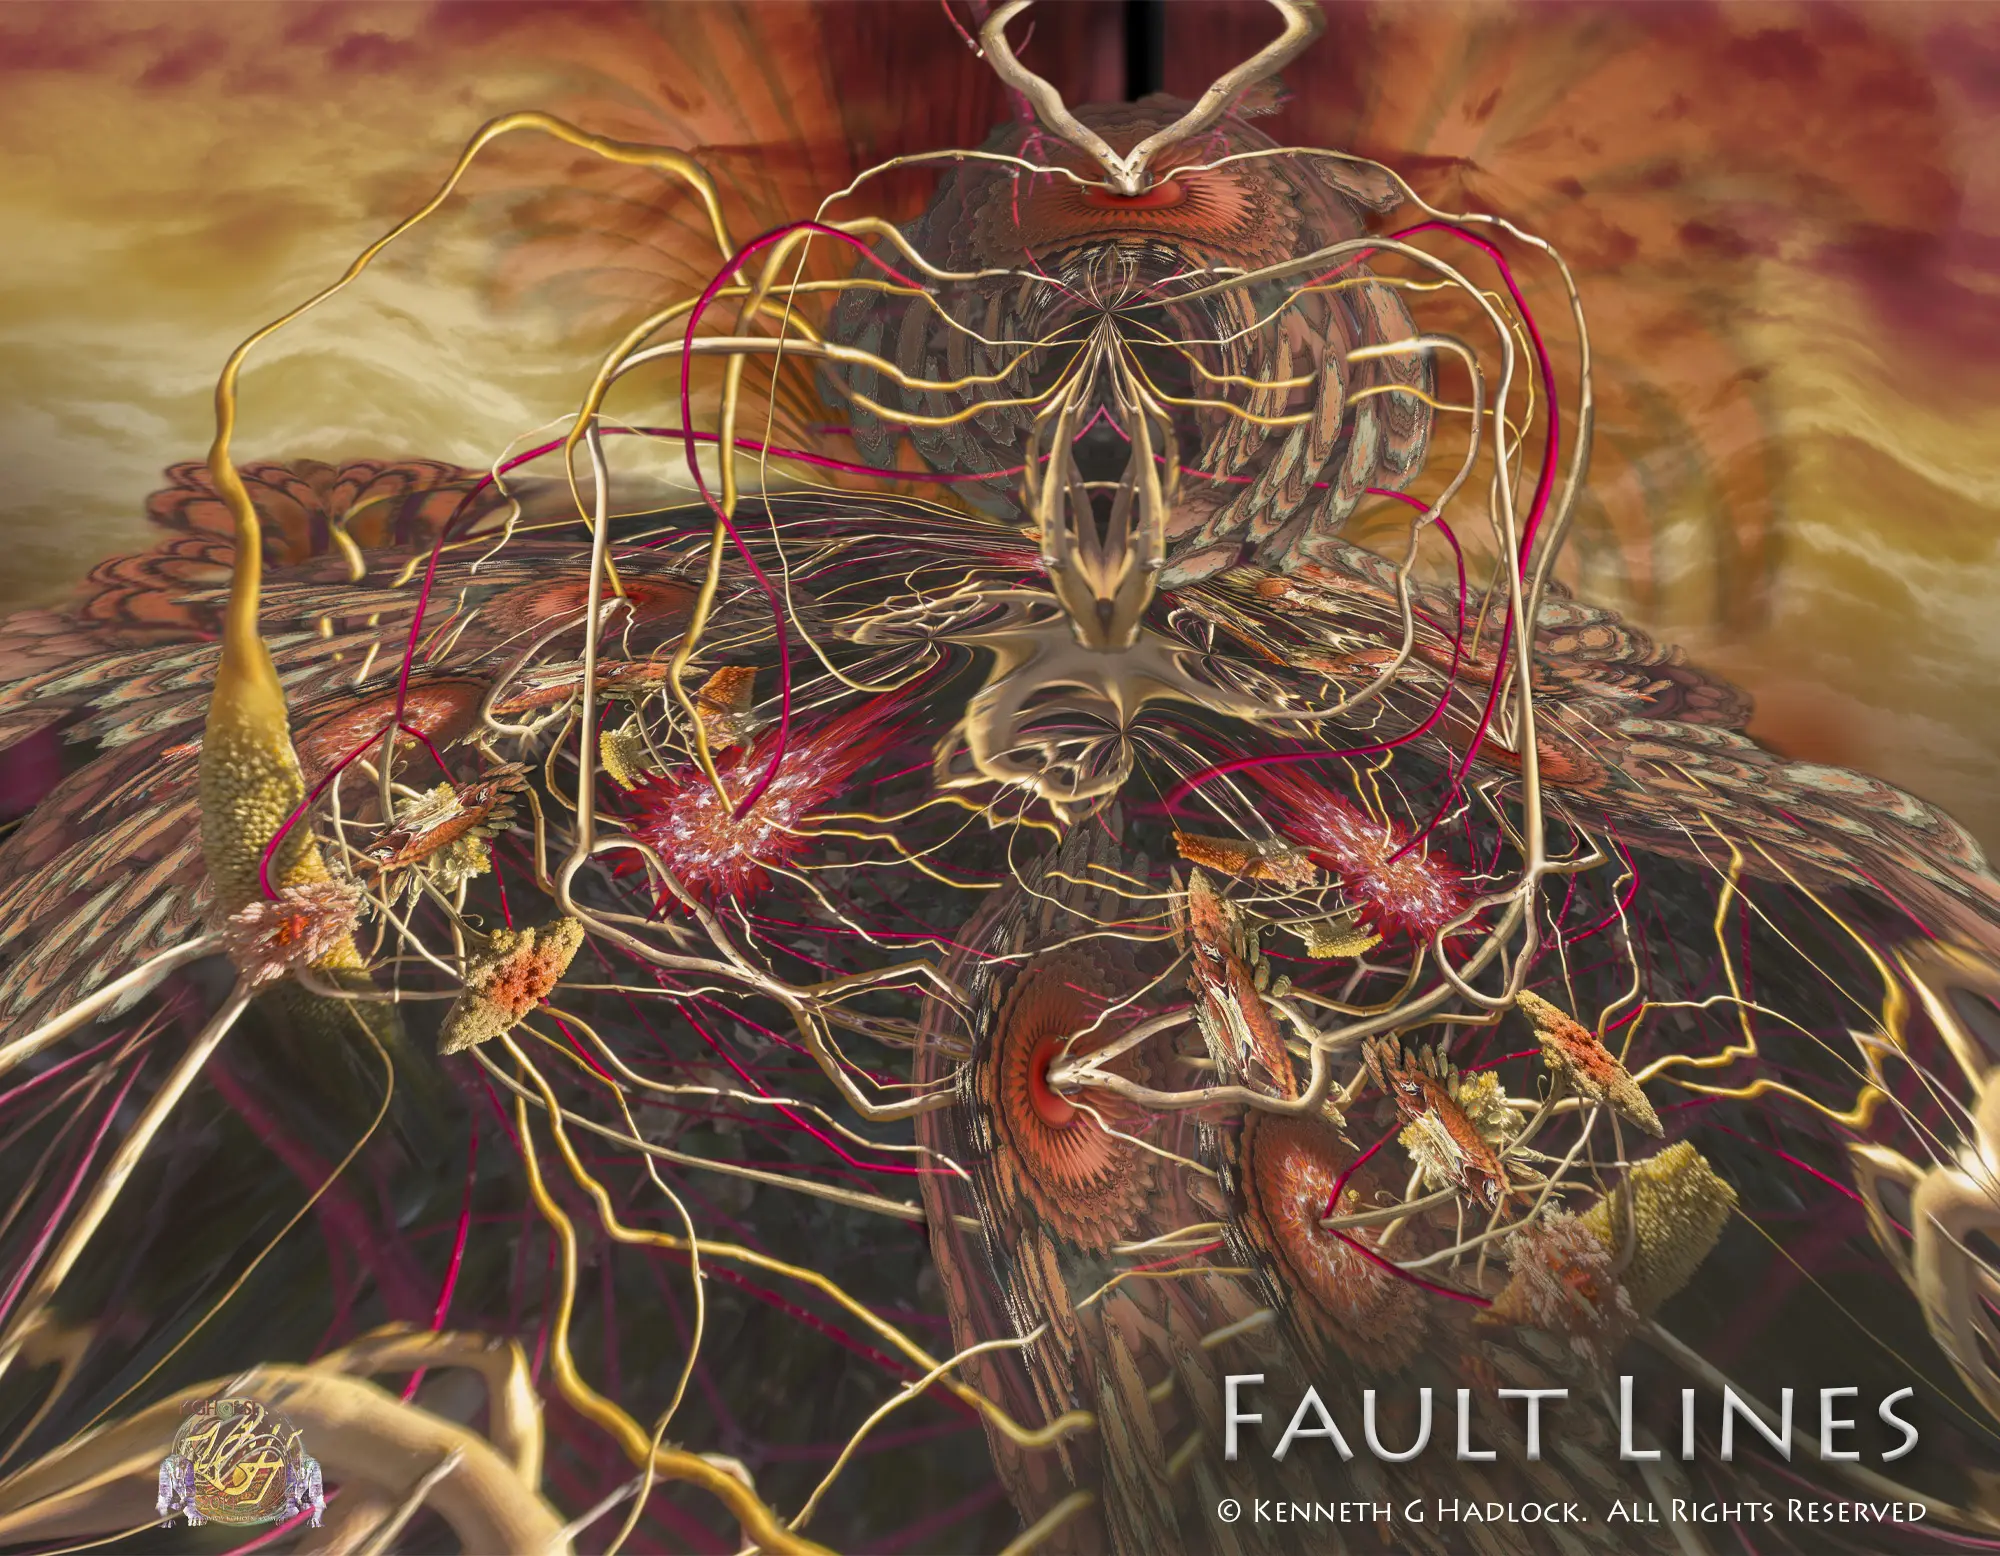 Digital Artwork - "Fault Lines"